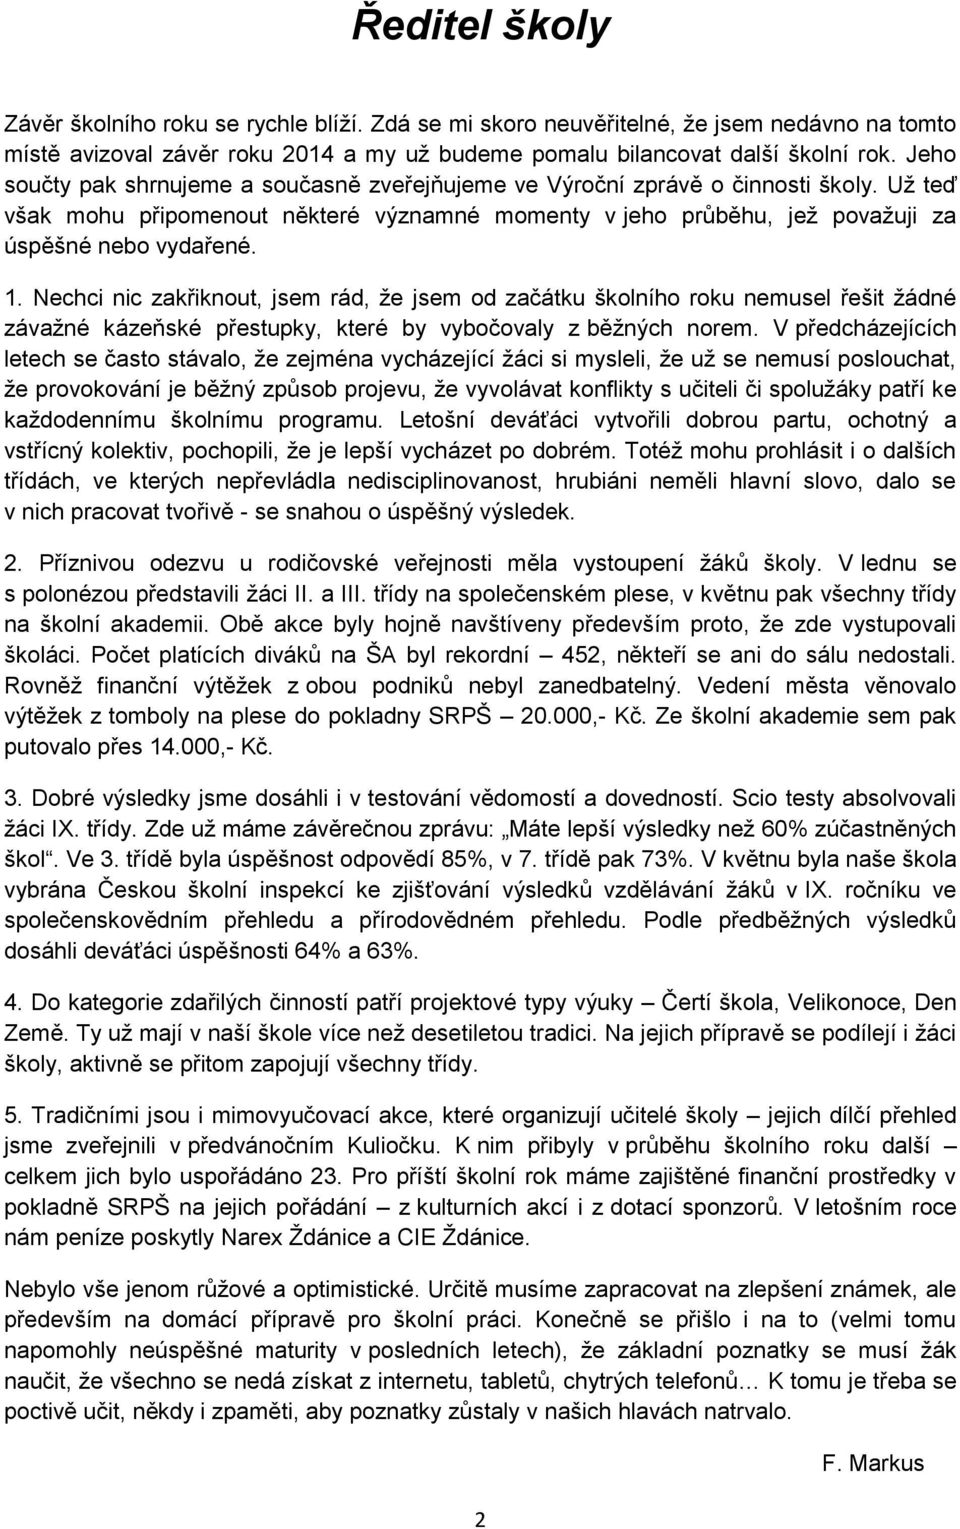 KULIOČKO Školní časopis žáků MZŠ Ždánice 4. číslo červen PDF Free Download